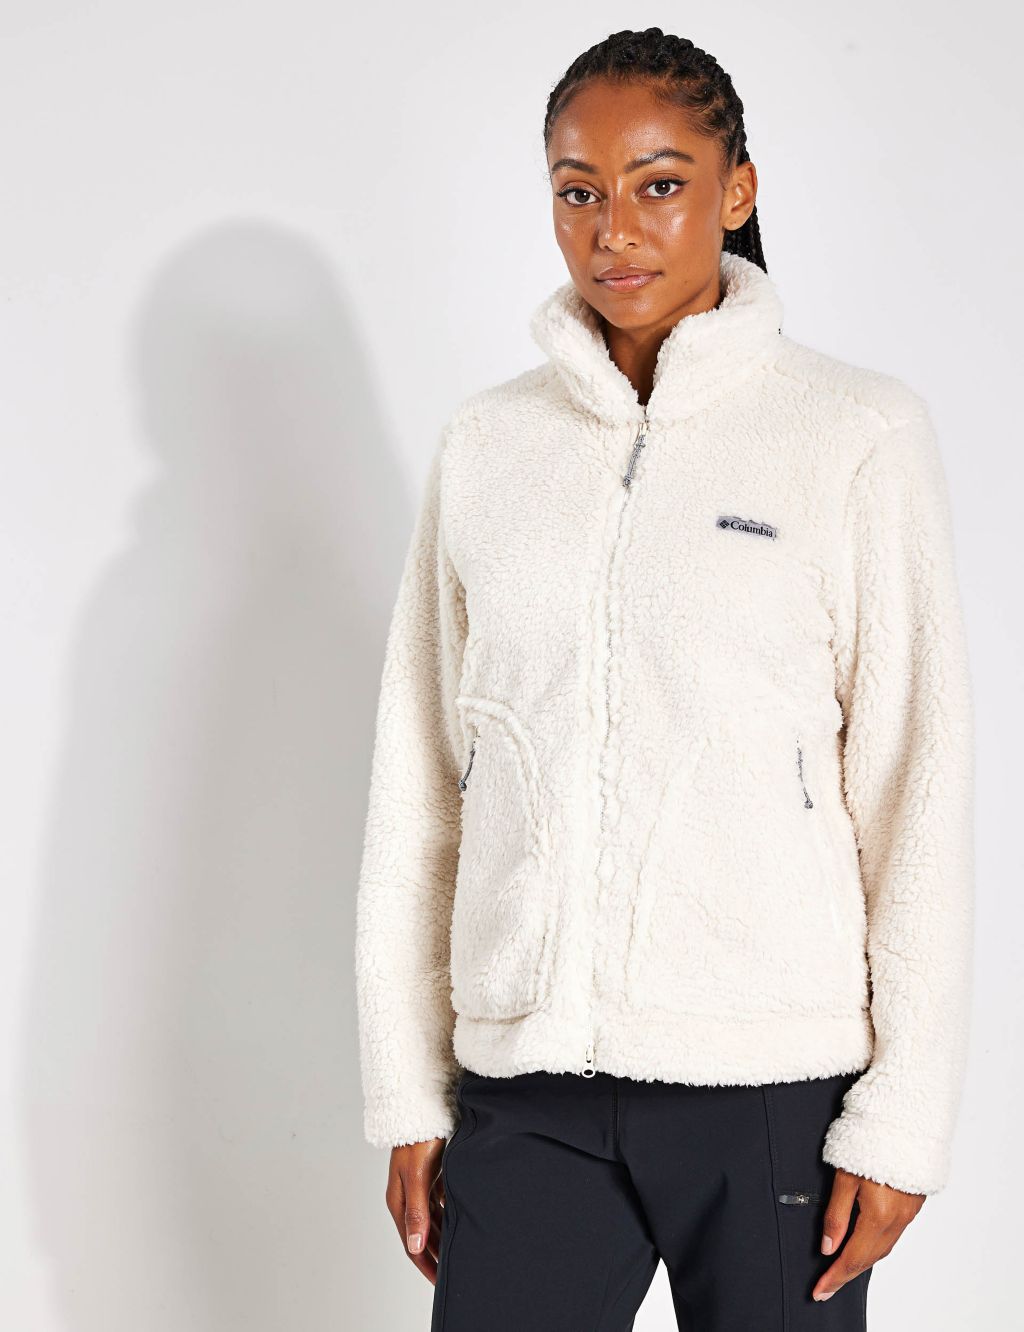 Women's Winter Fleece Jackets on Sale | bellvalefarms.com